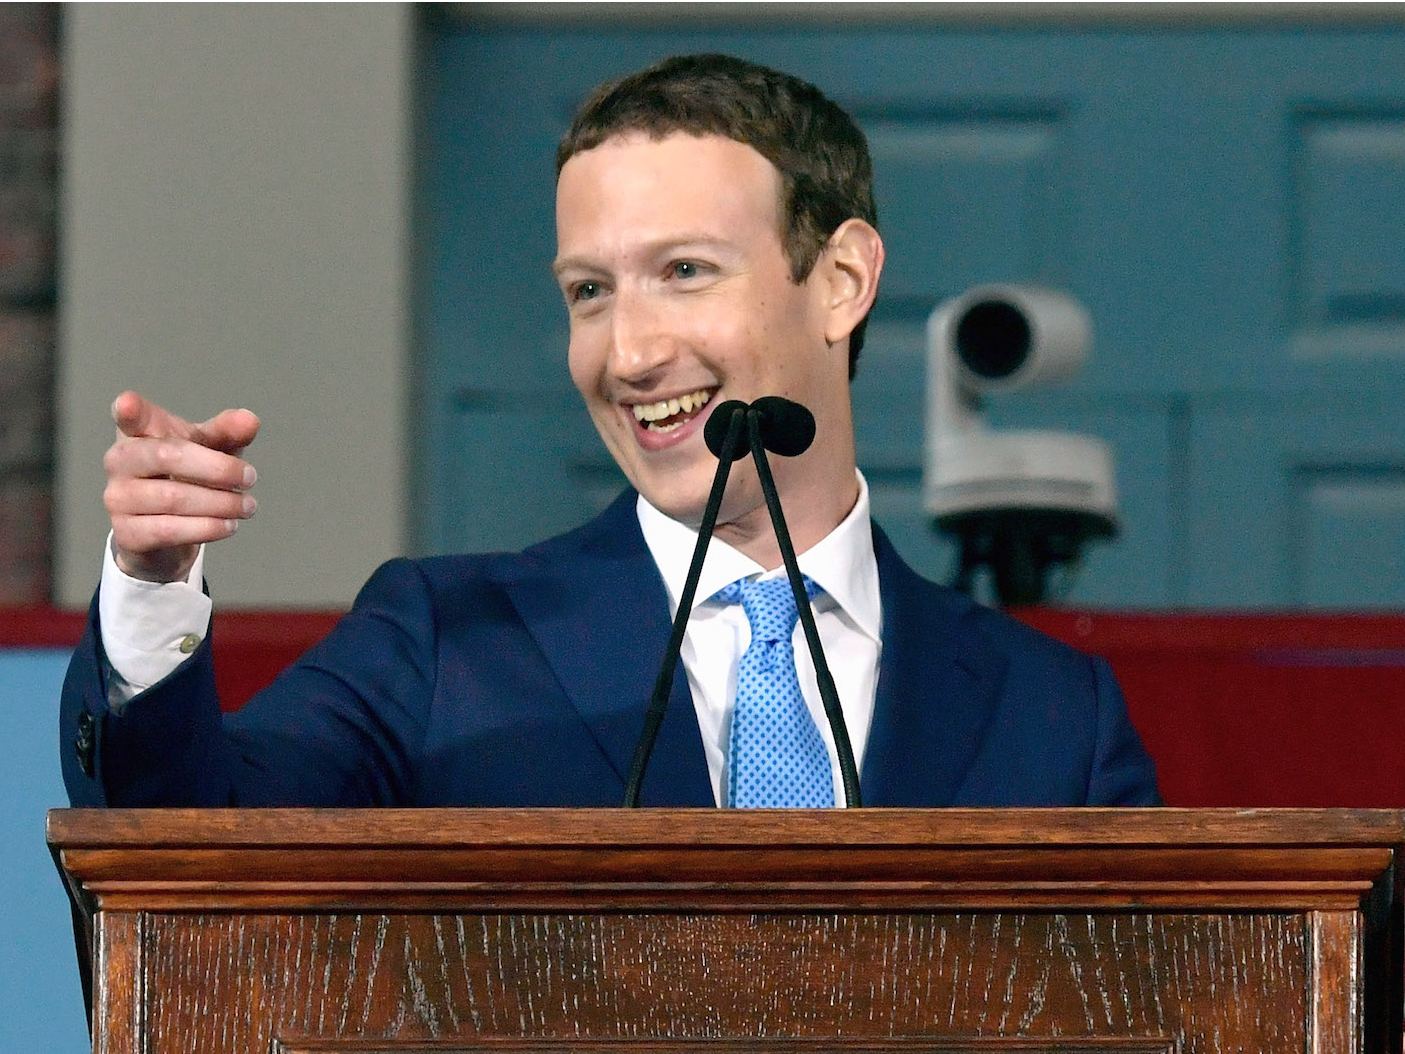 フェイスブックの共同創業者兼CEOマーク・ザッカーバーグは、創業から4年でビリオネアになった。